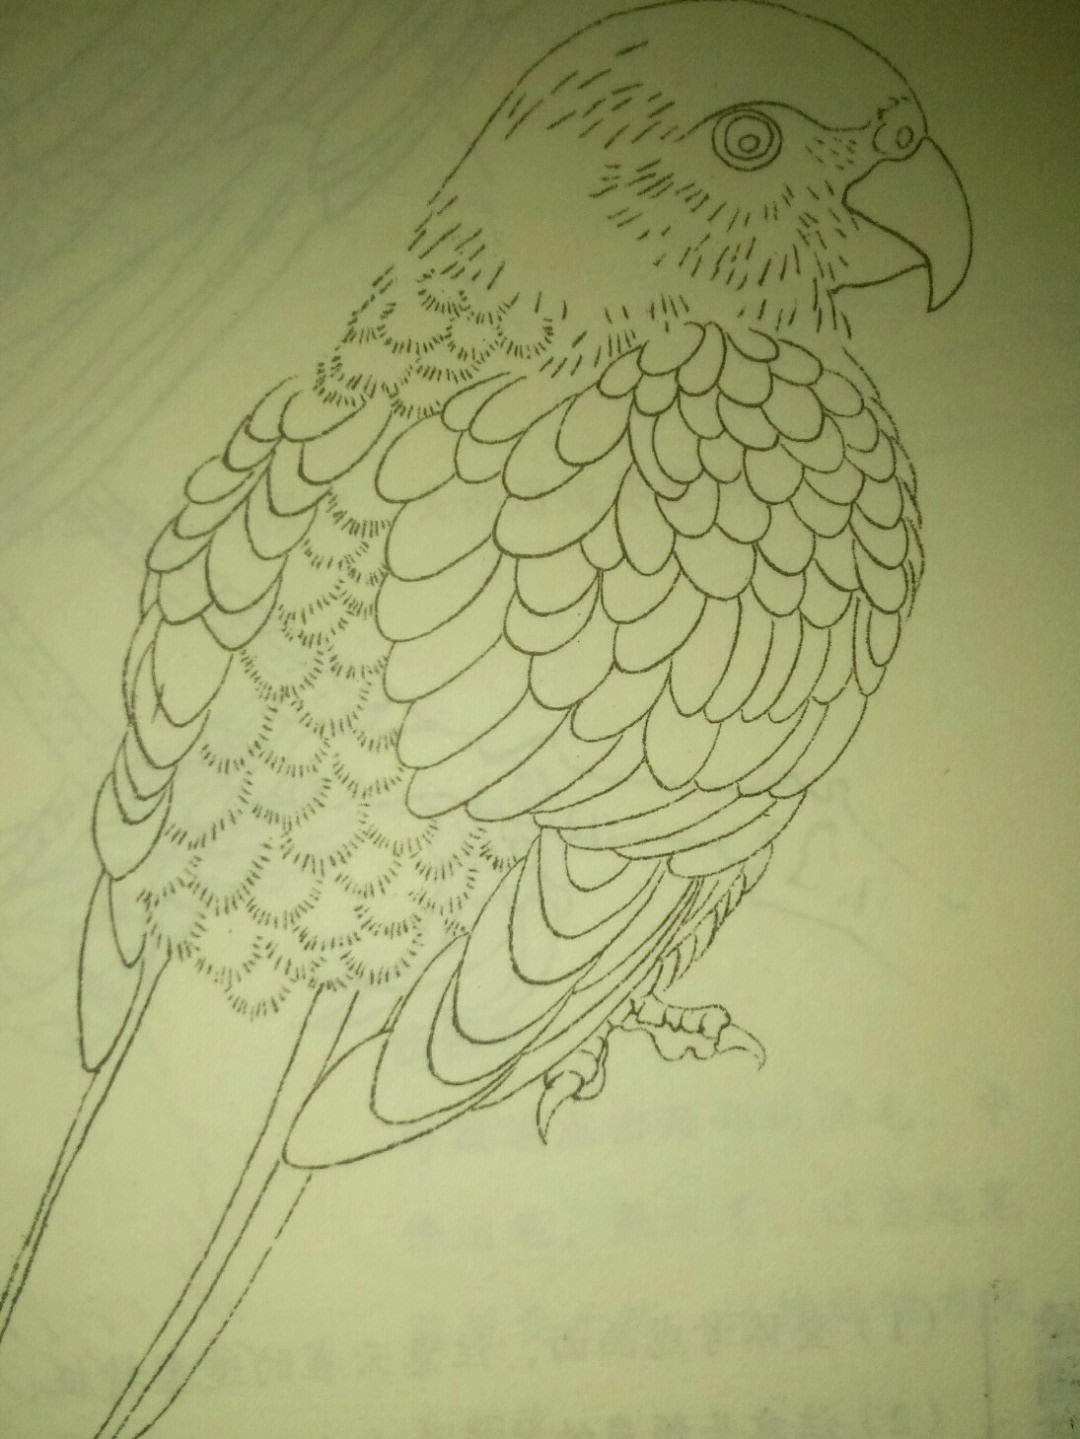 怎么画鹦鹉一步一步图片